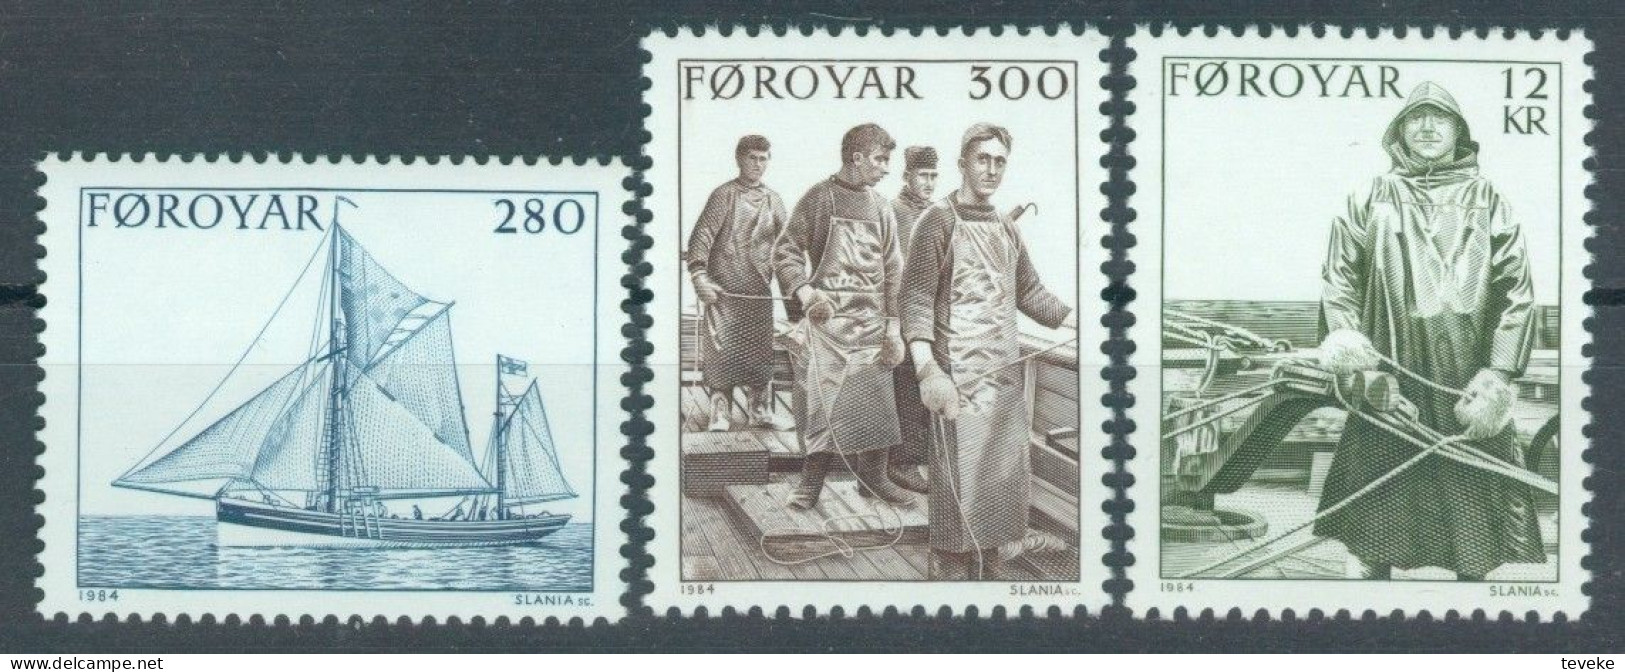 FAEROËR 1984 - MiNr. 103/105 - **/MNH - Fishing - Faroe Islands